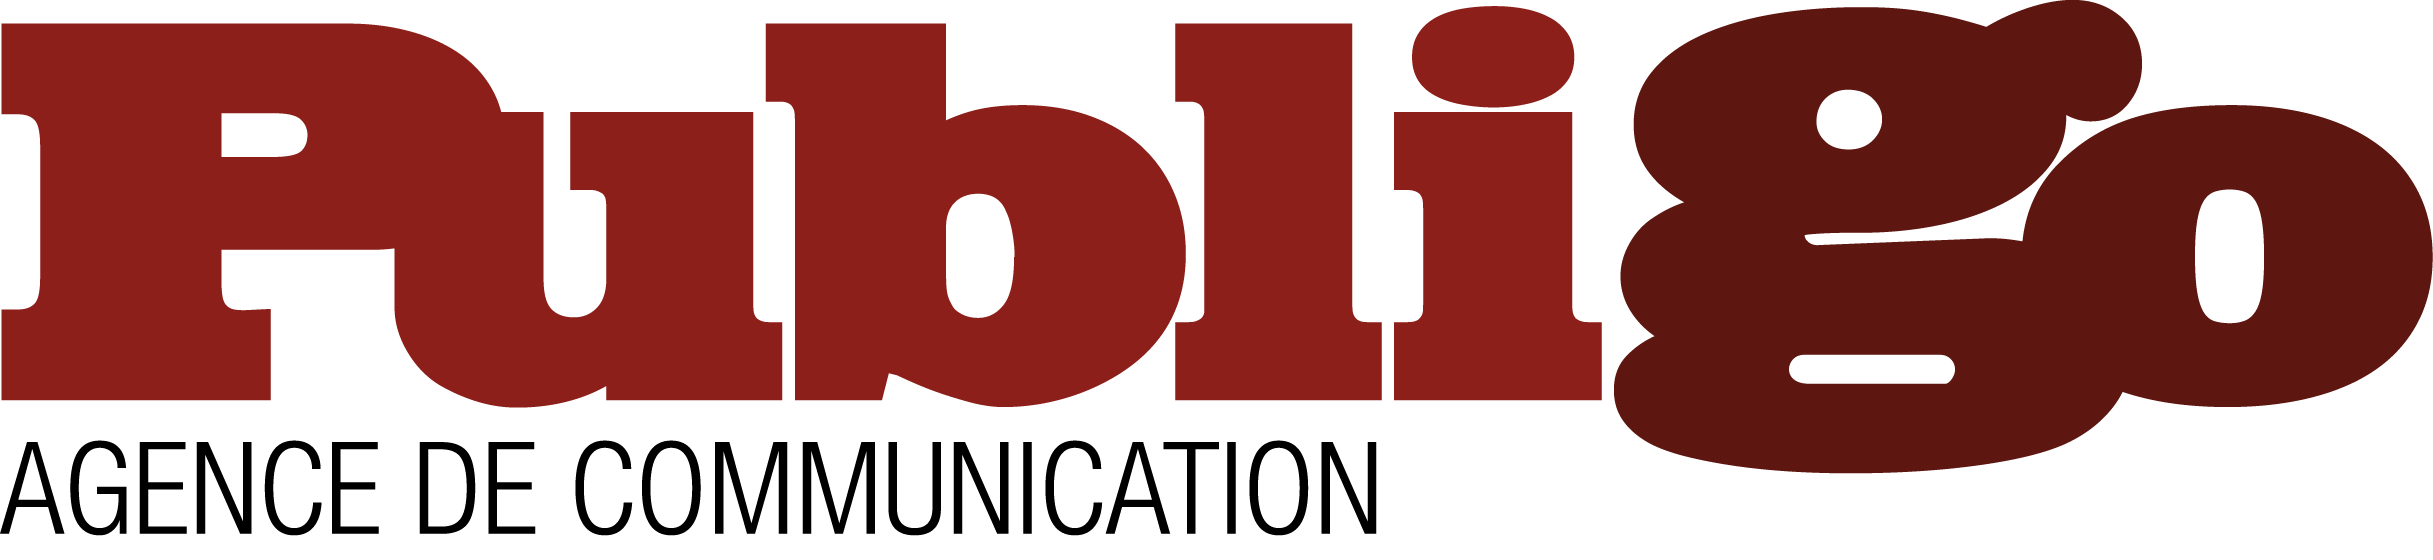 Logo Publigo